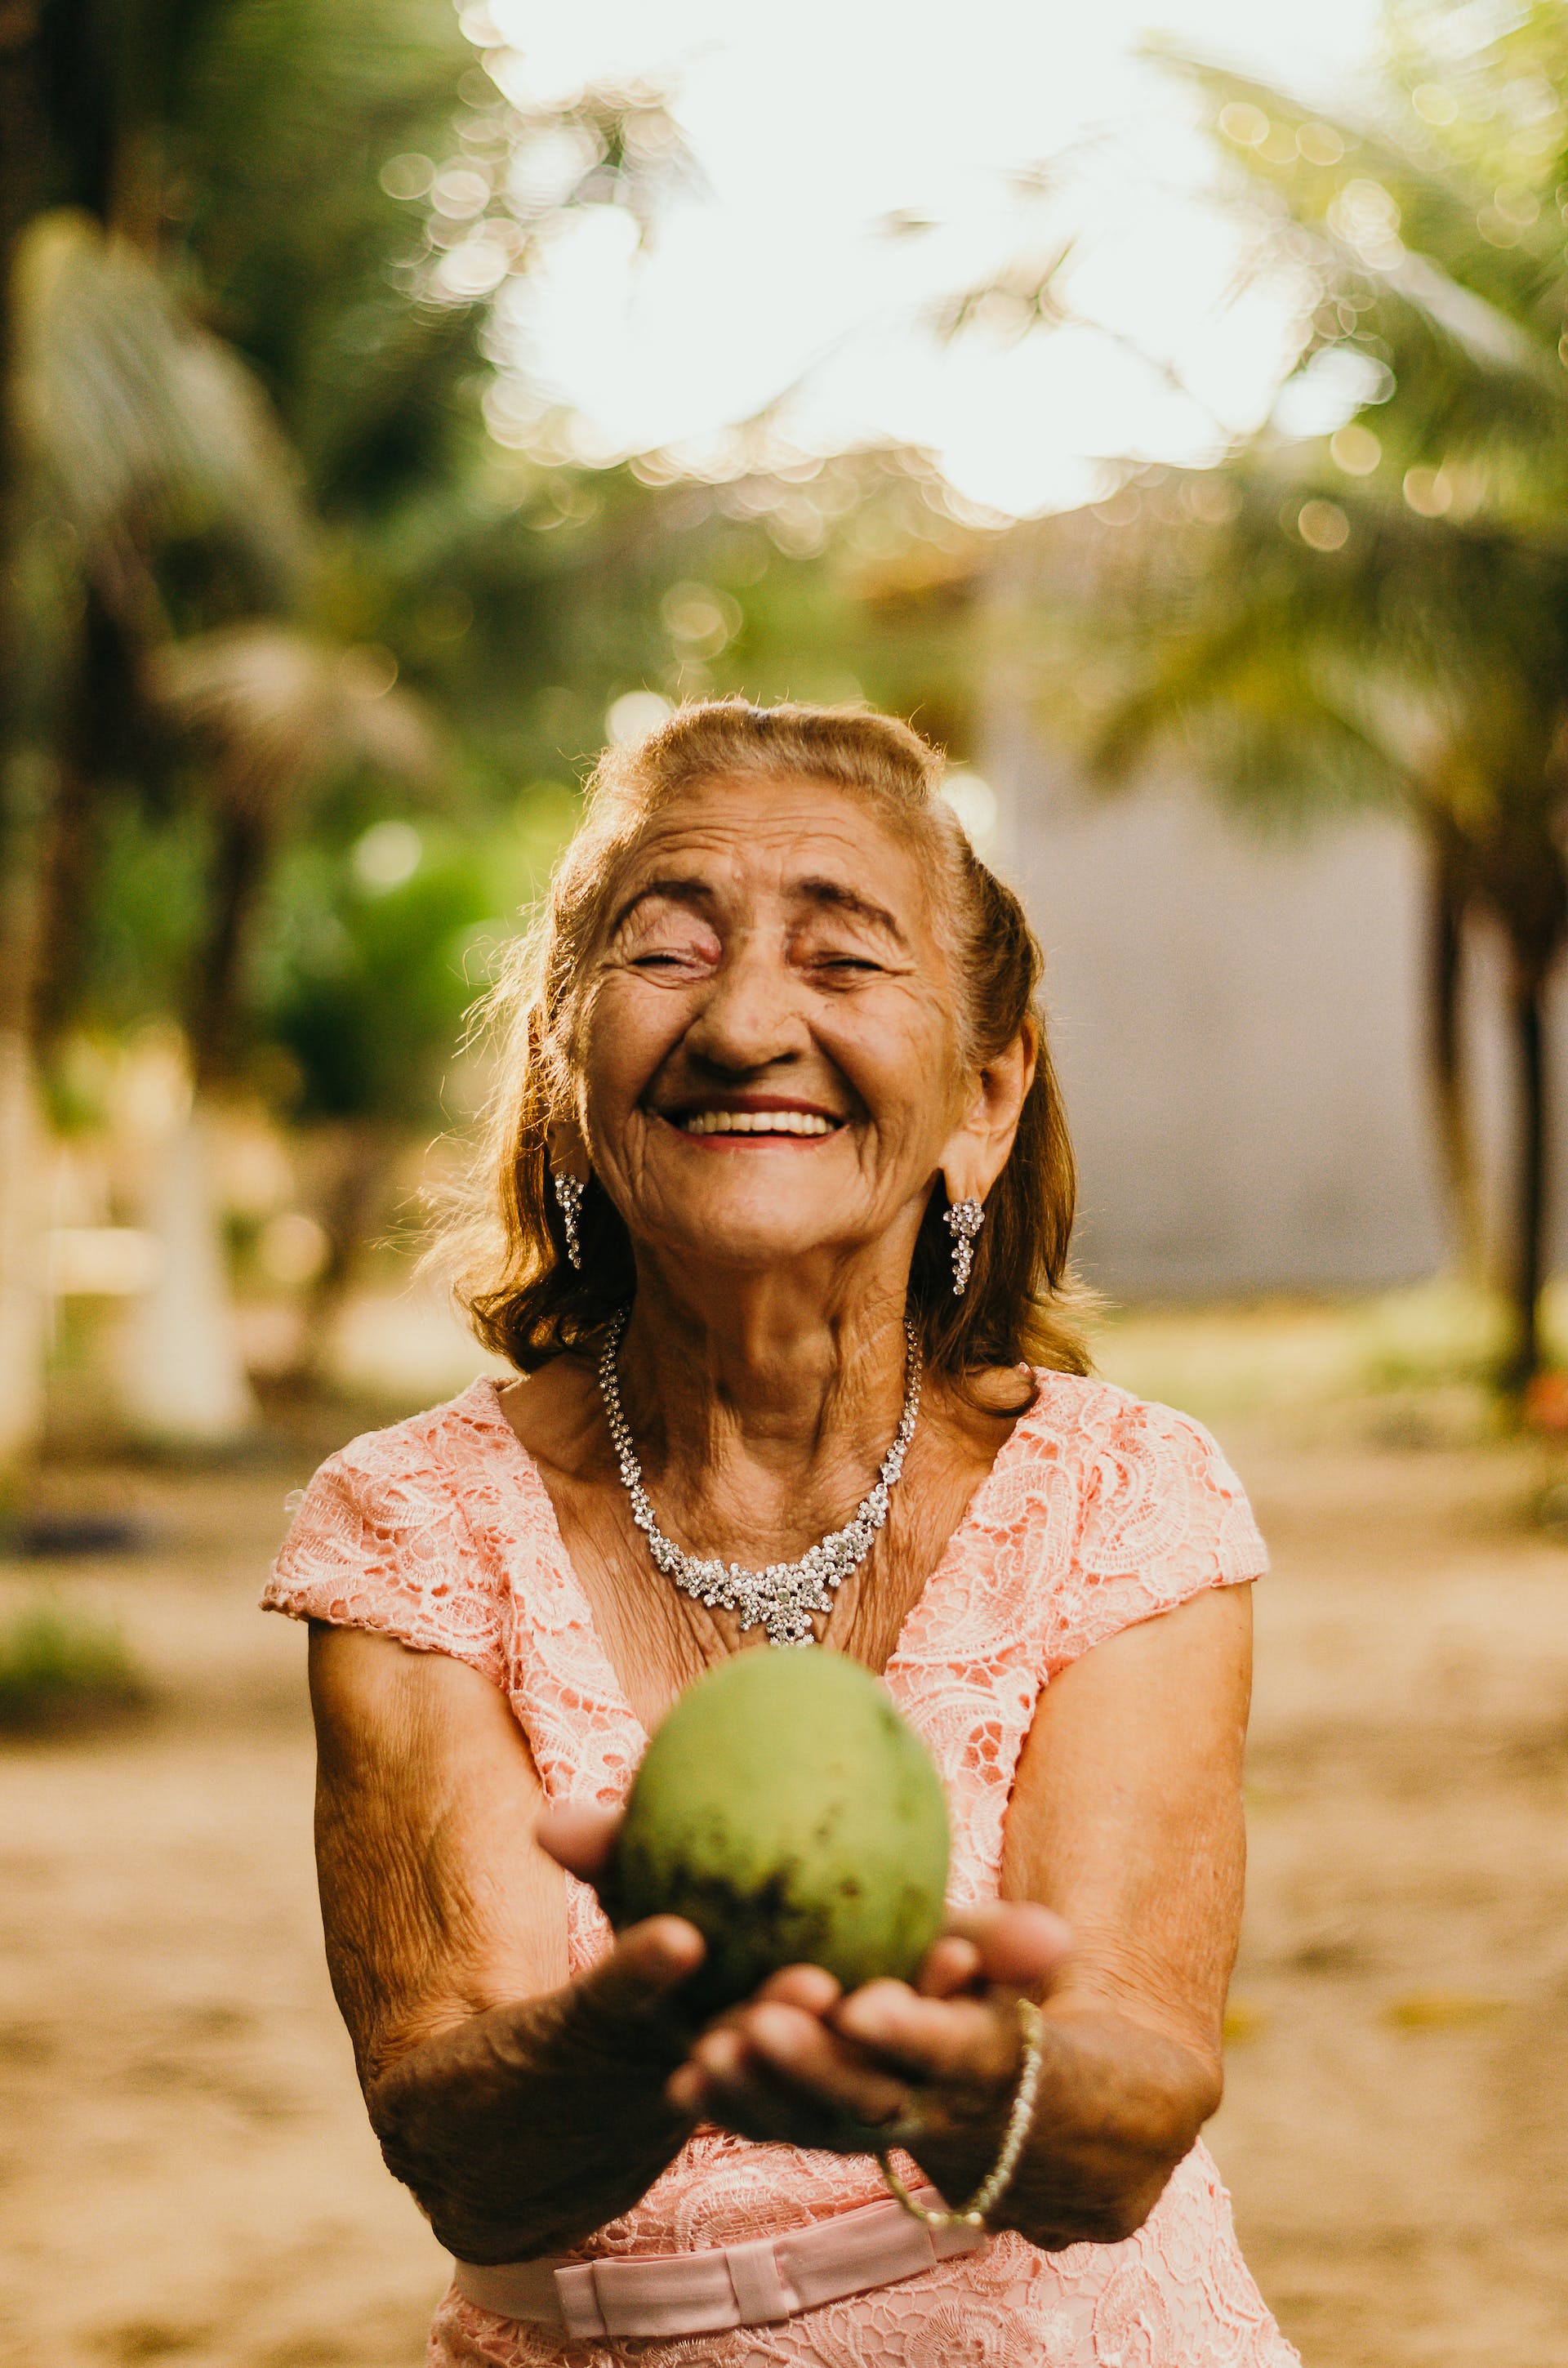 Alte Frau lächelt und hält eine Kokosnuss | Quelle: Pexels